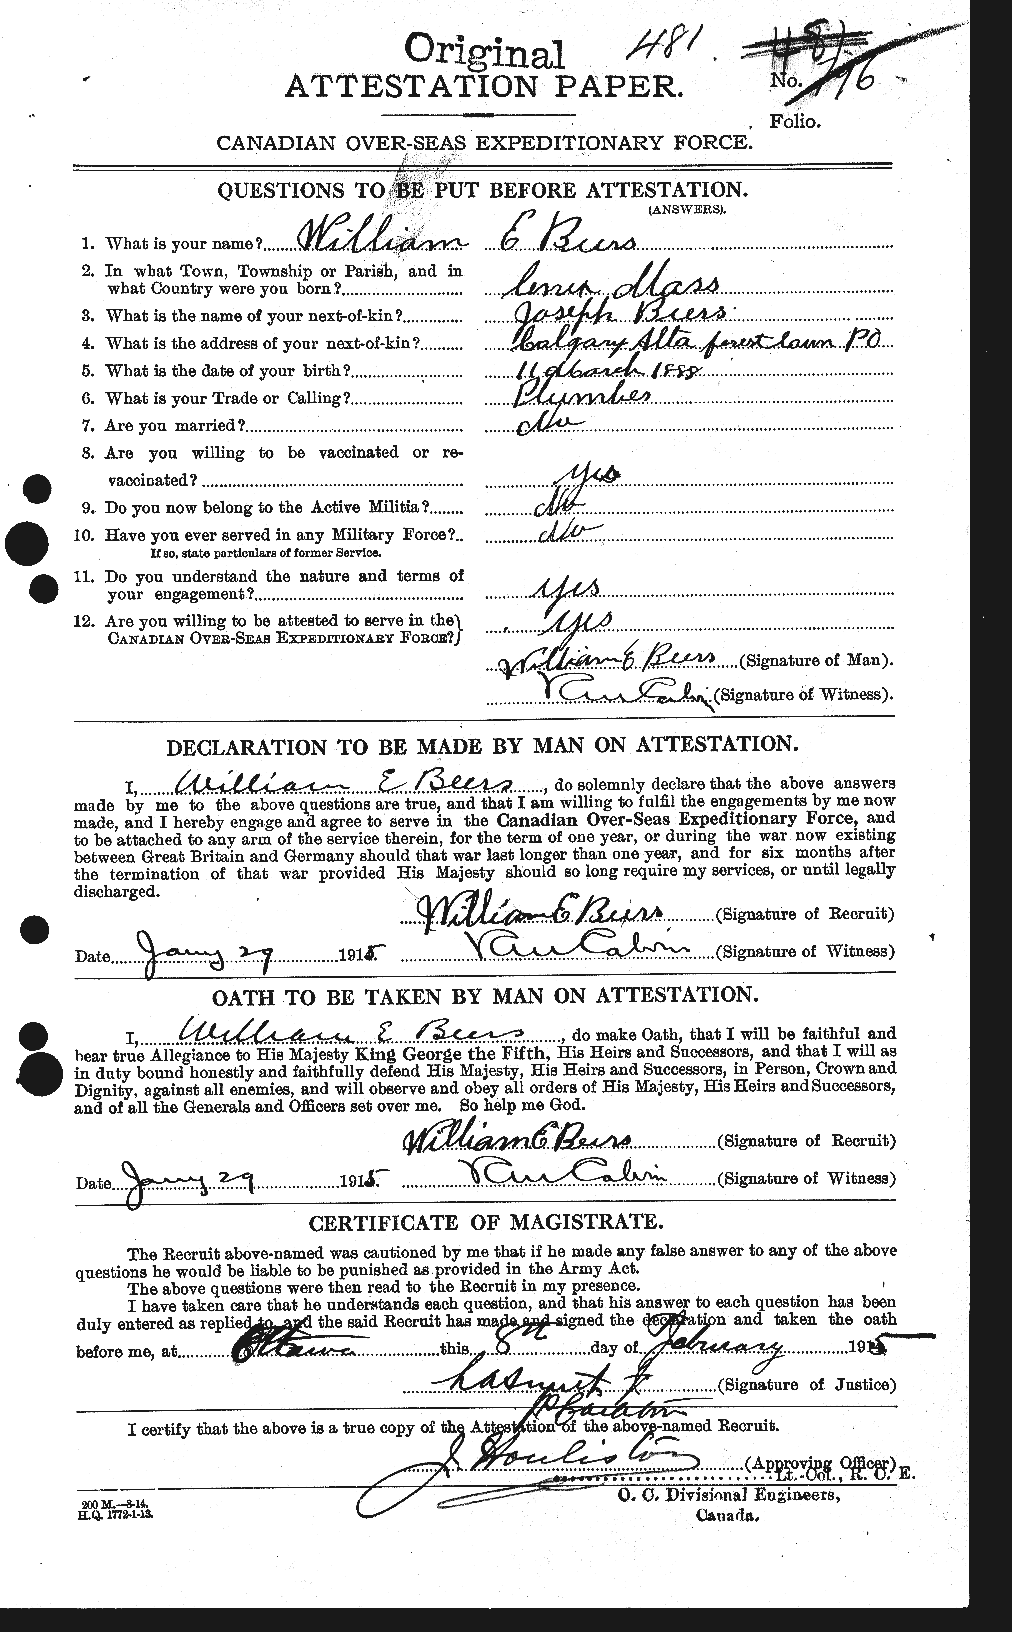 Dossiers du Personnel de la Première Guerre mondiale - CEC 241617a